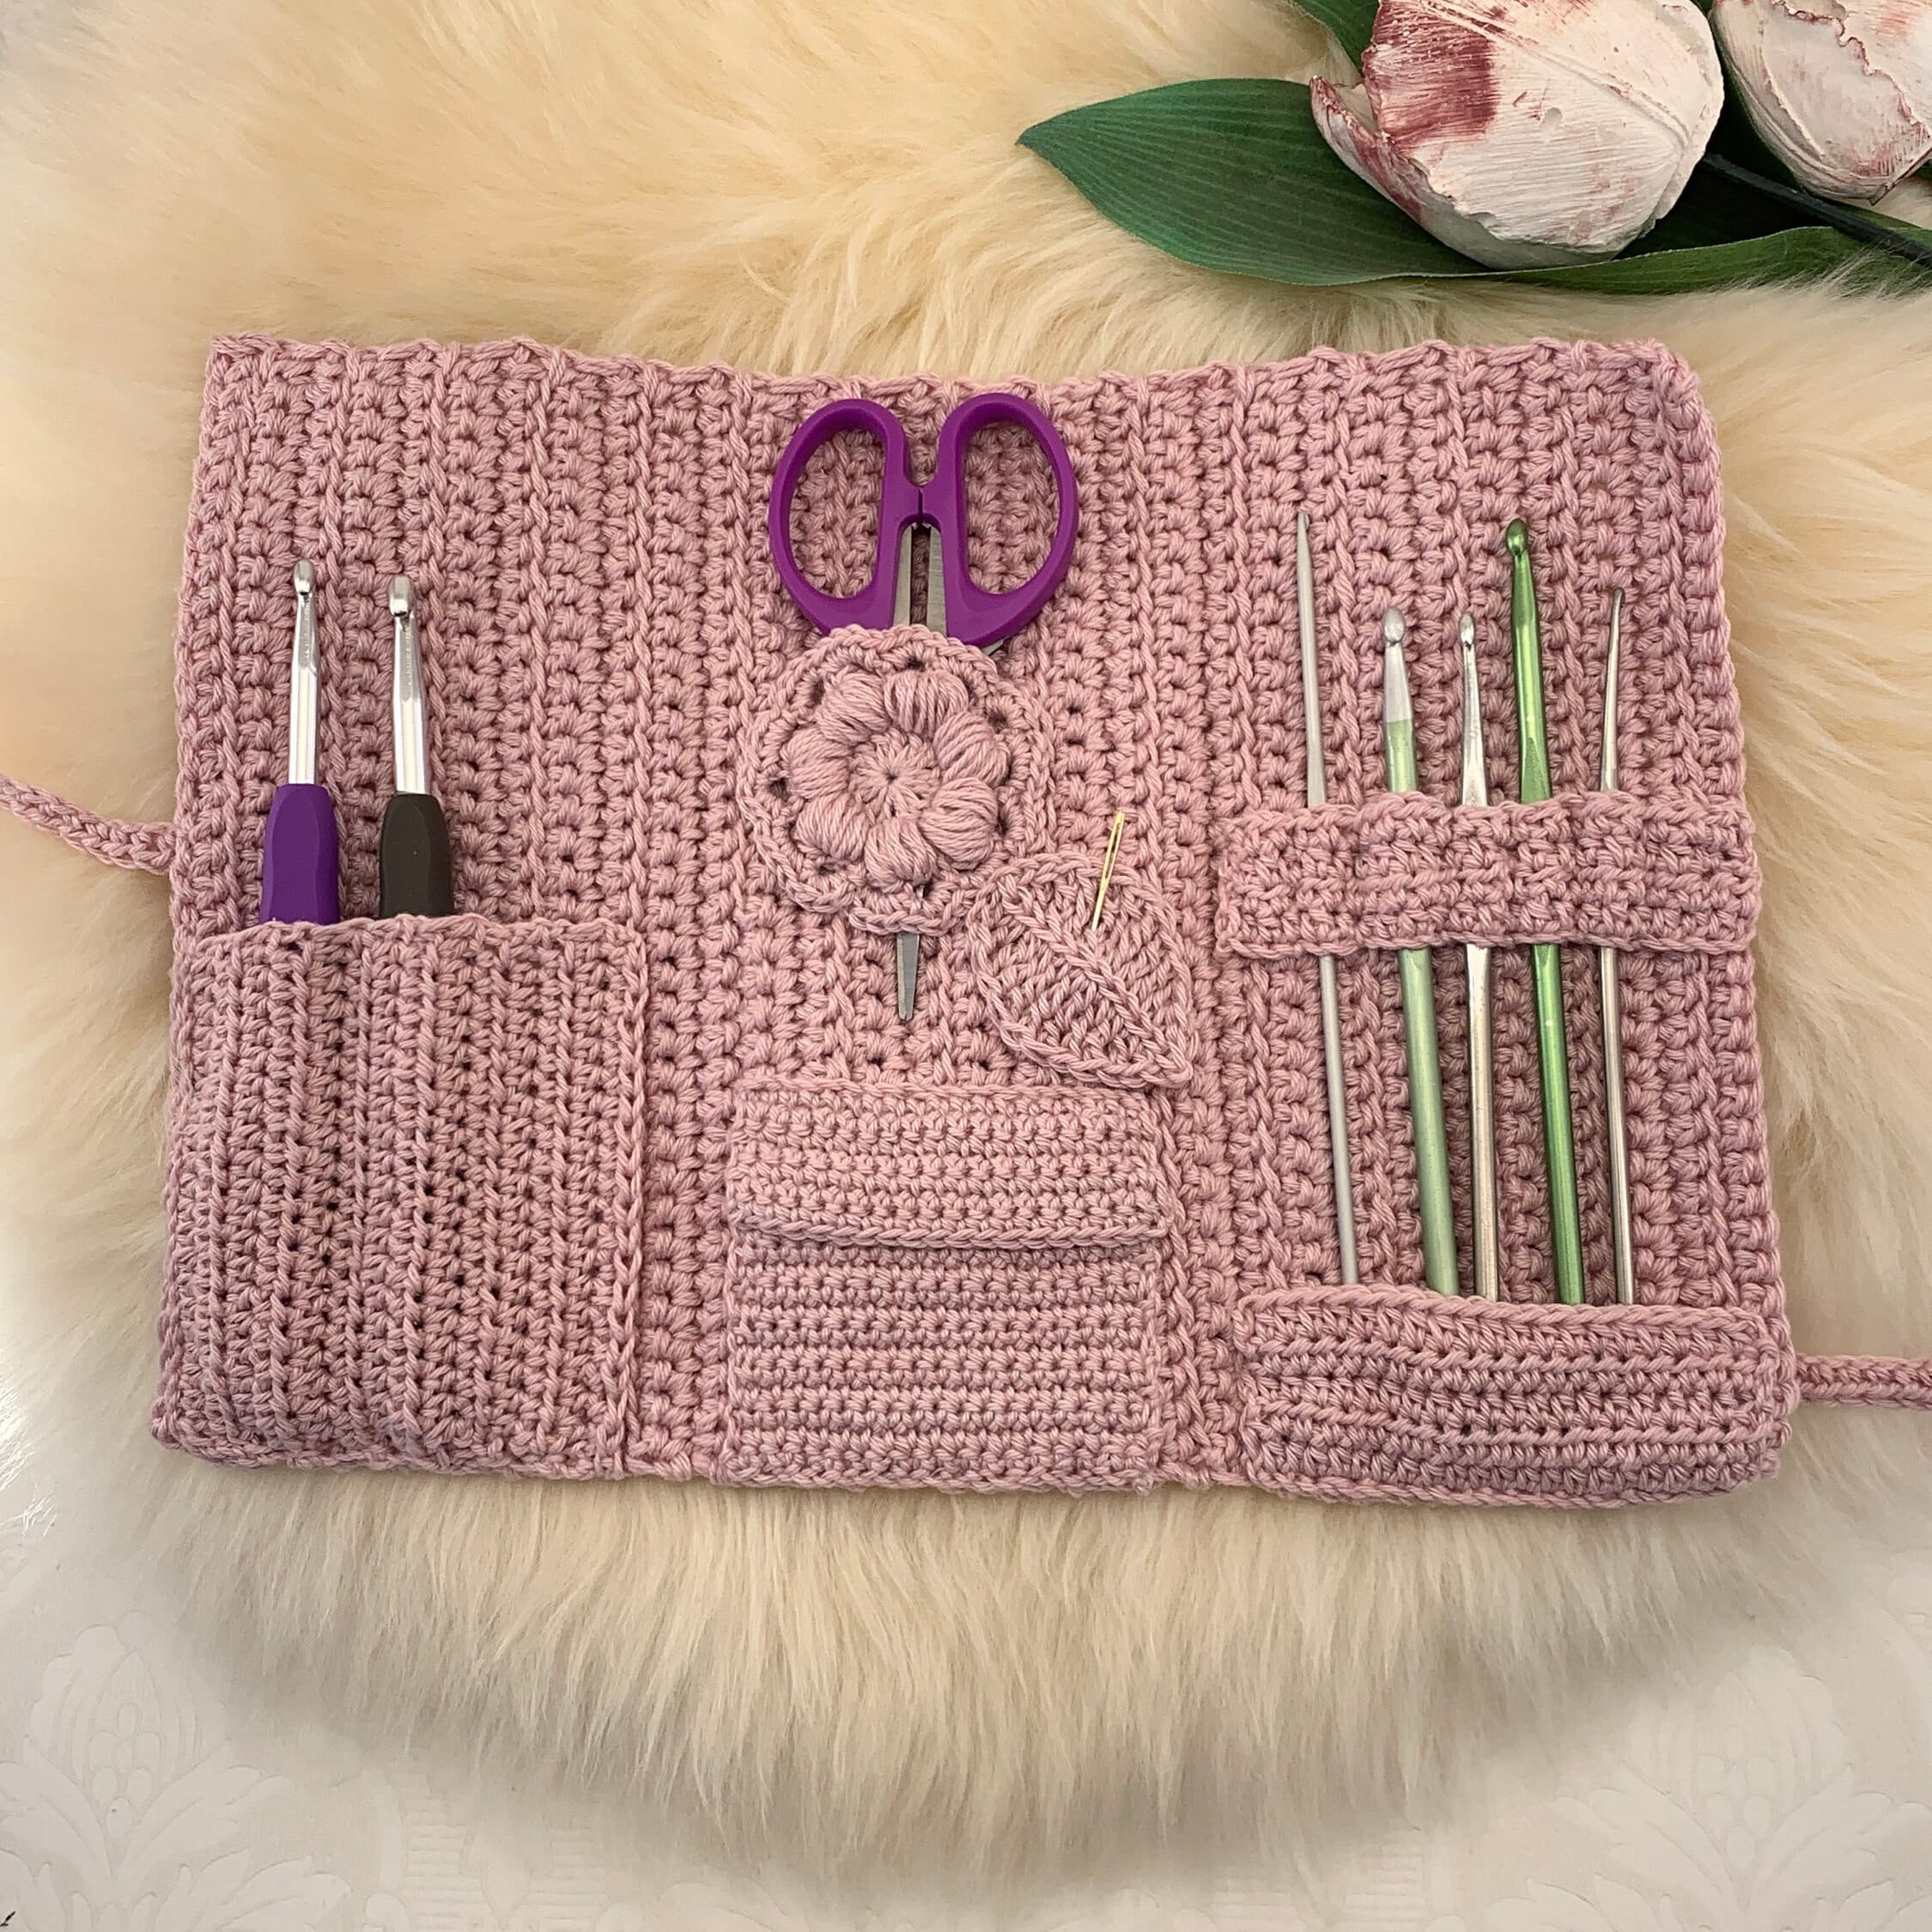 Ravelry: Crochet hook CASE pattern by Kseniia Semeliak